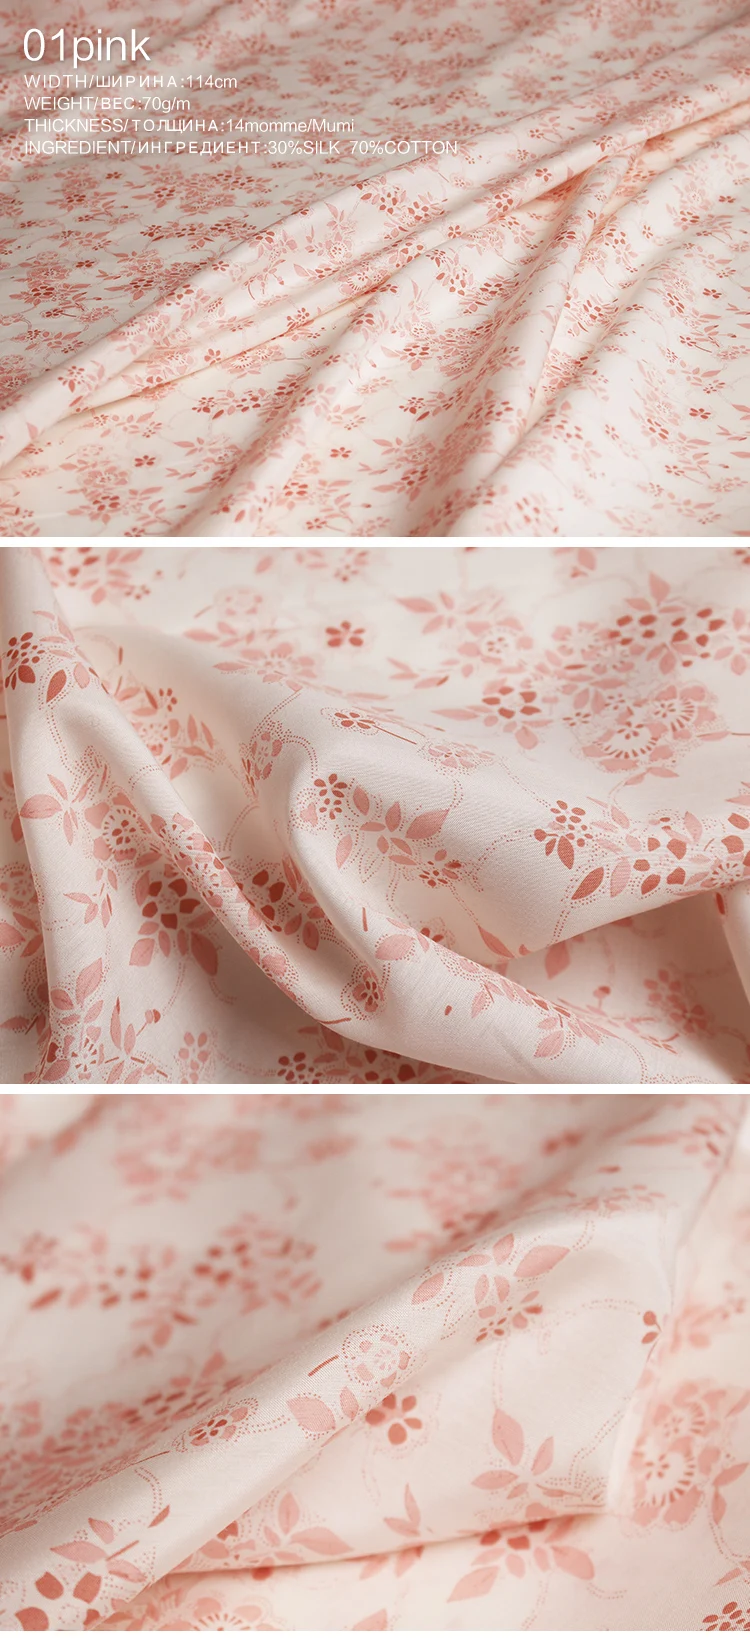 Pearlsilk 14momme плотный шелк хлопок маленькие цветы печатные материалы для одежды летнее платье DIY Одежда ткани